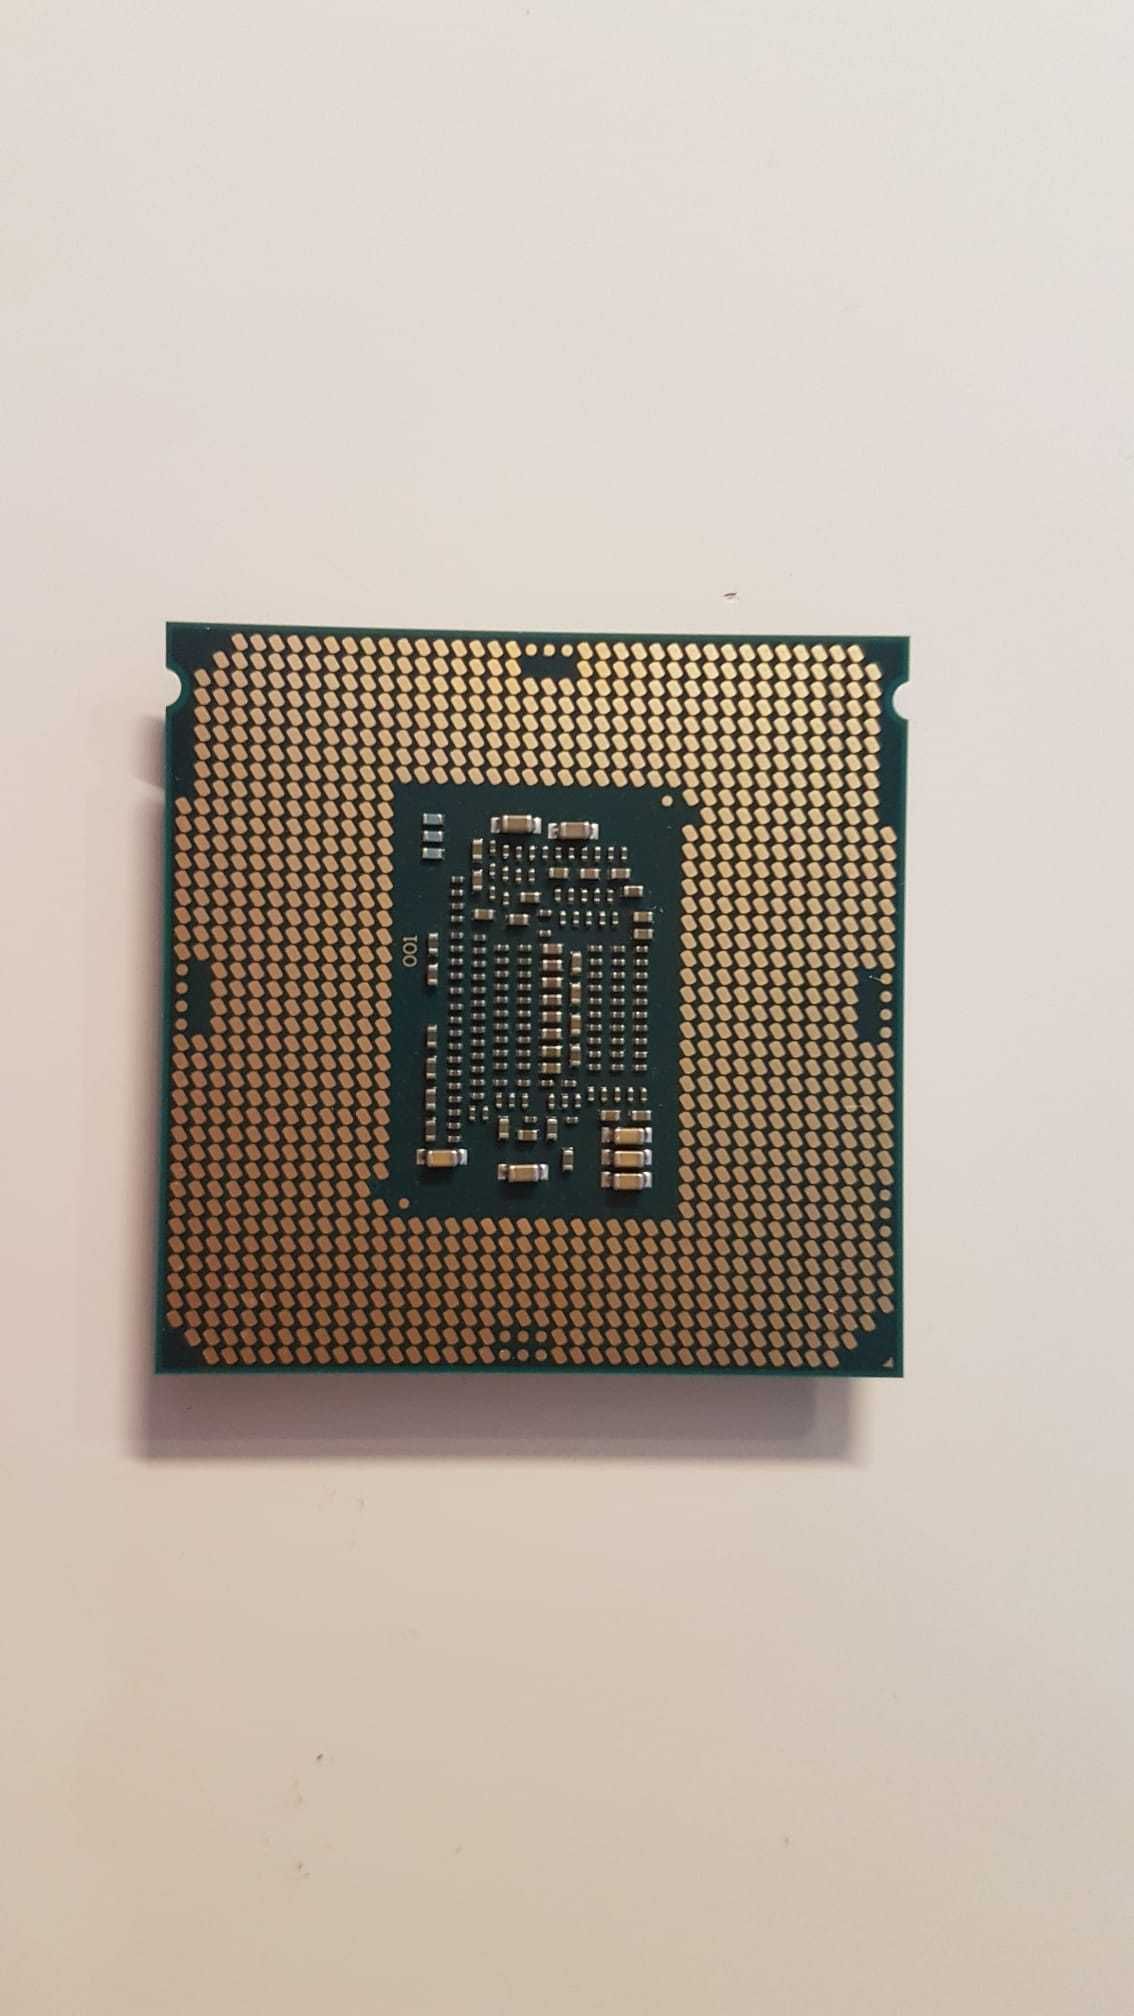 Procesor Intel Xeon E3-1230 V6 3.50 Ghz Quad Core FCLGA1151 + COOLER